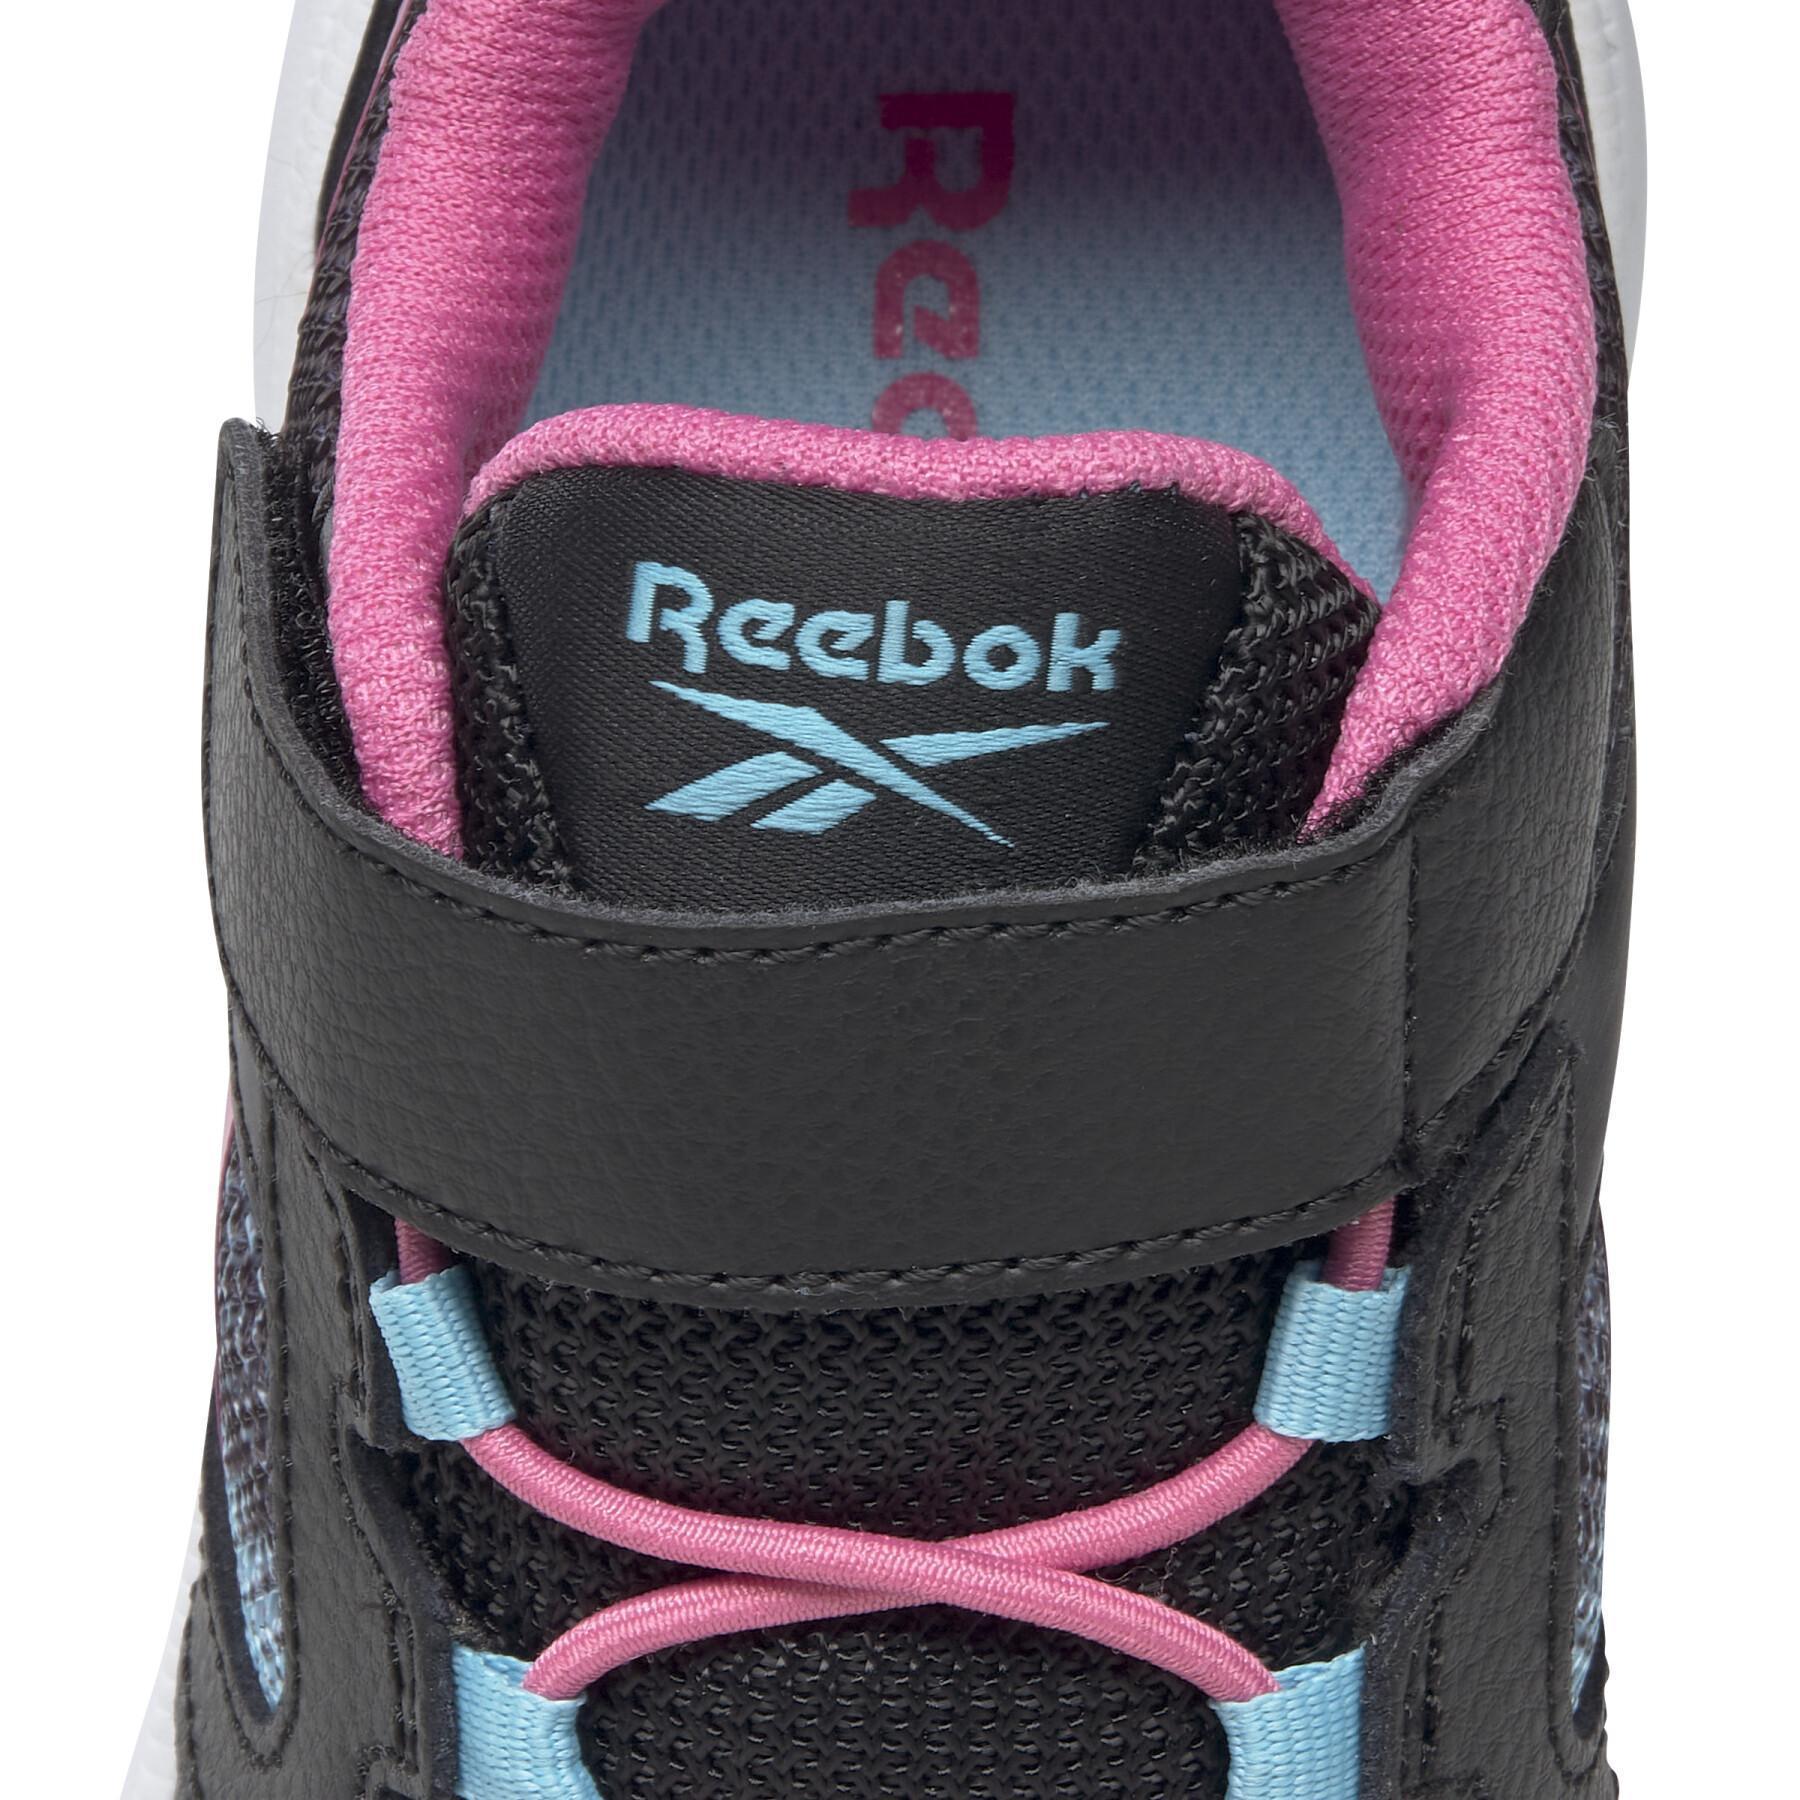 Schuhe für Mädchen Reebok Road Supreme 2 Alt